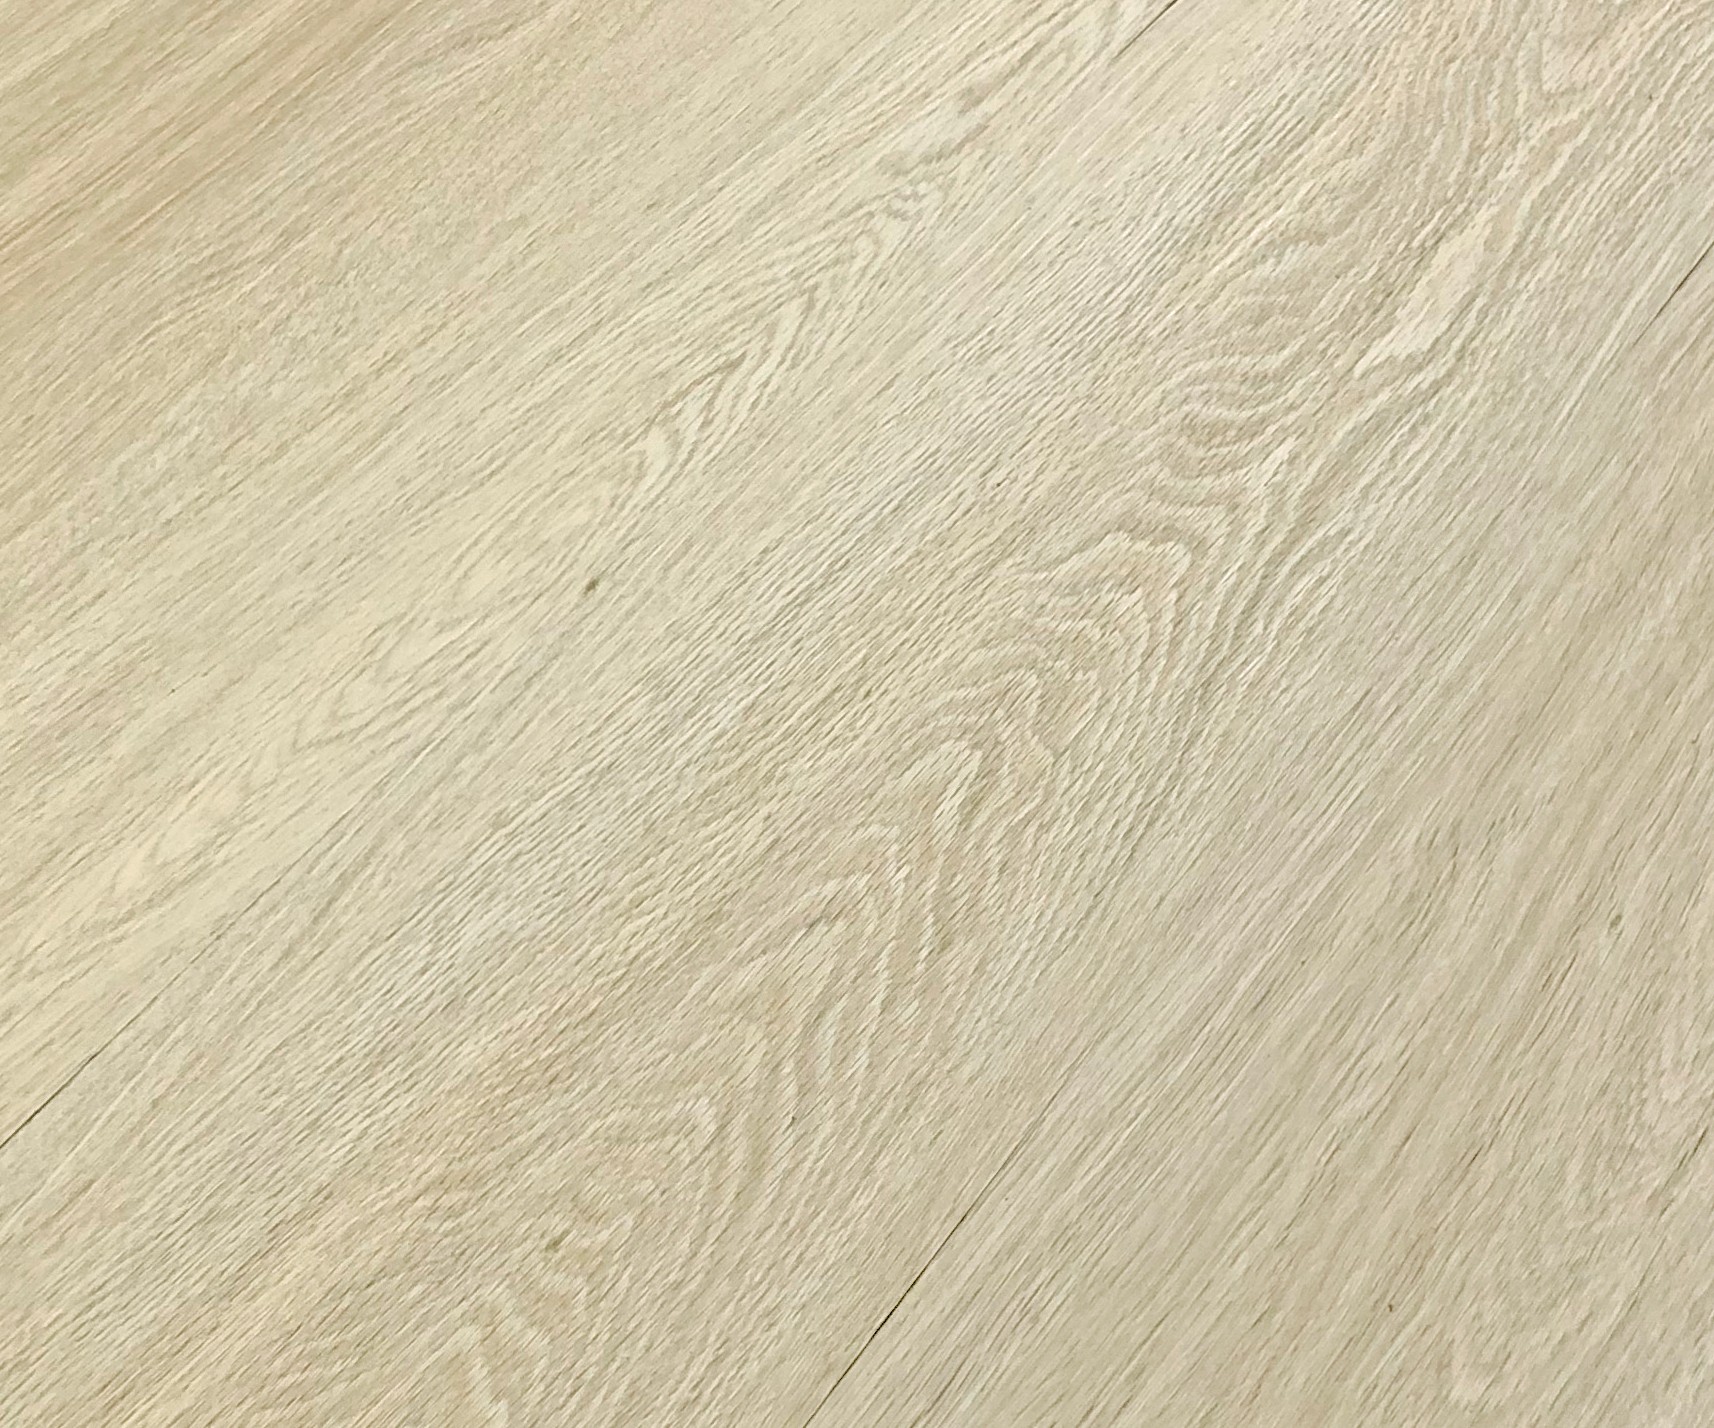 Podlaha vinylová lepená Home XL patagonia oak beige KPP